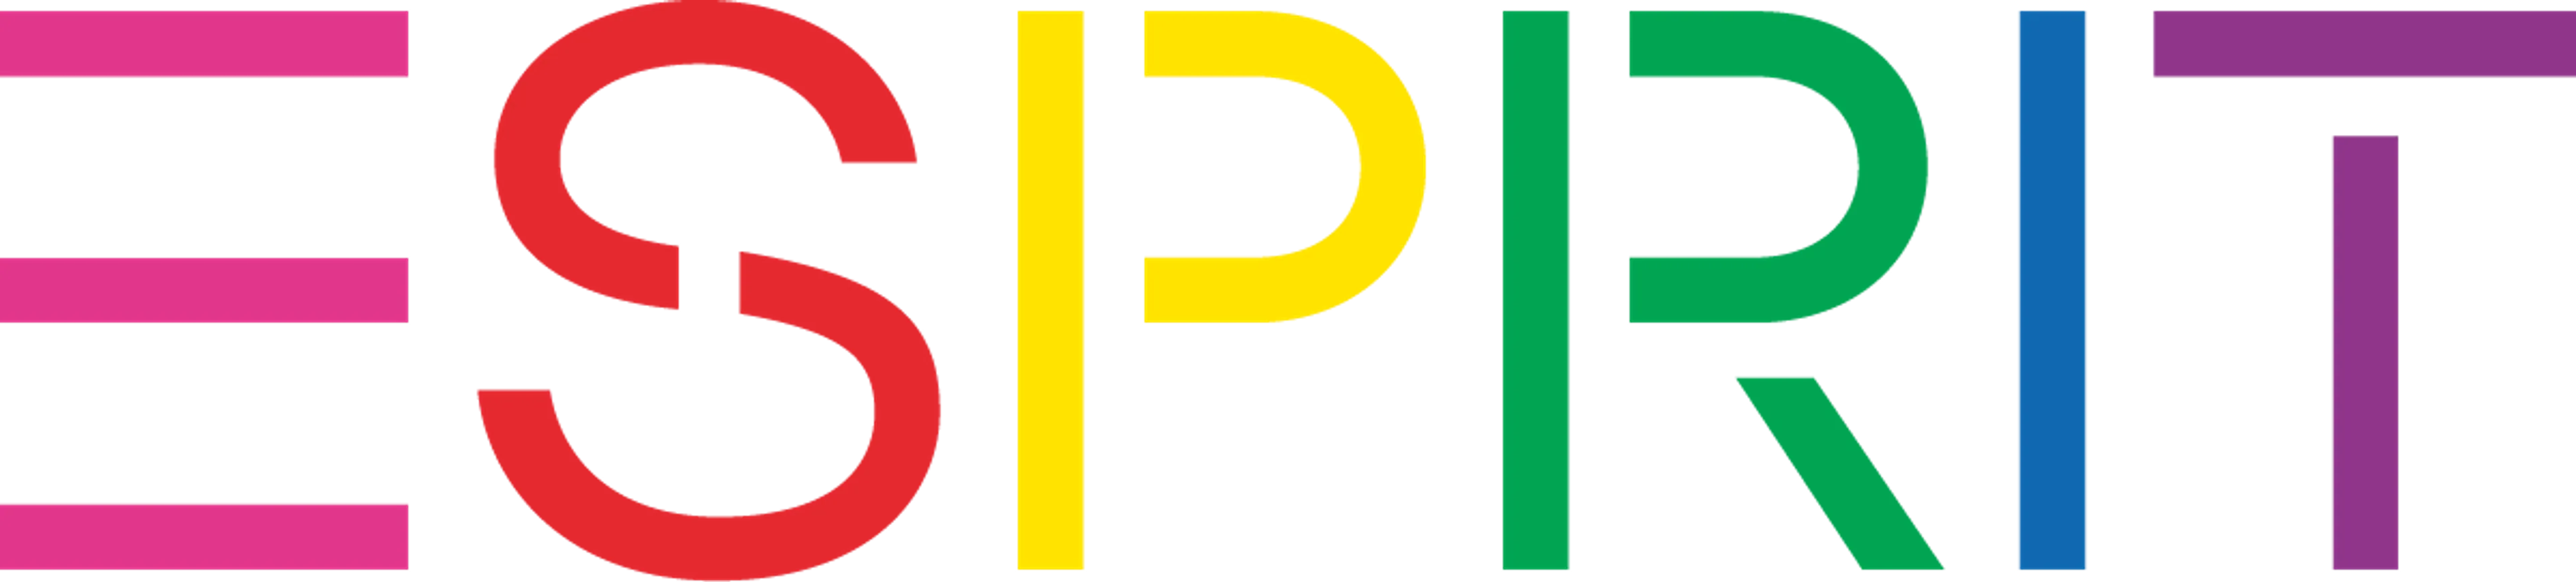 ESPRIT logo